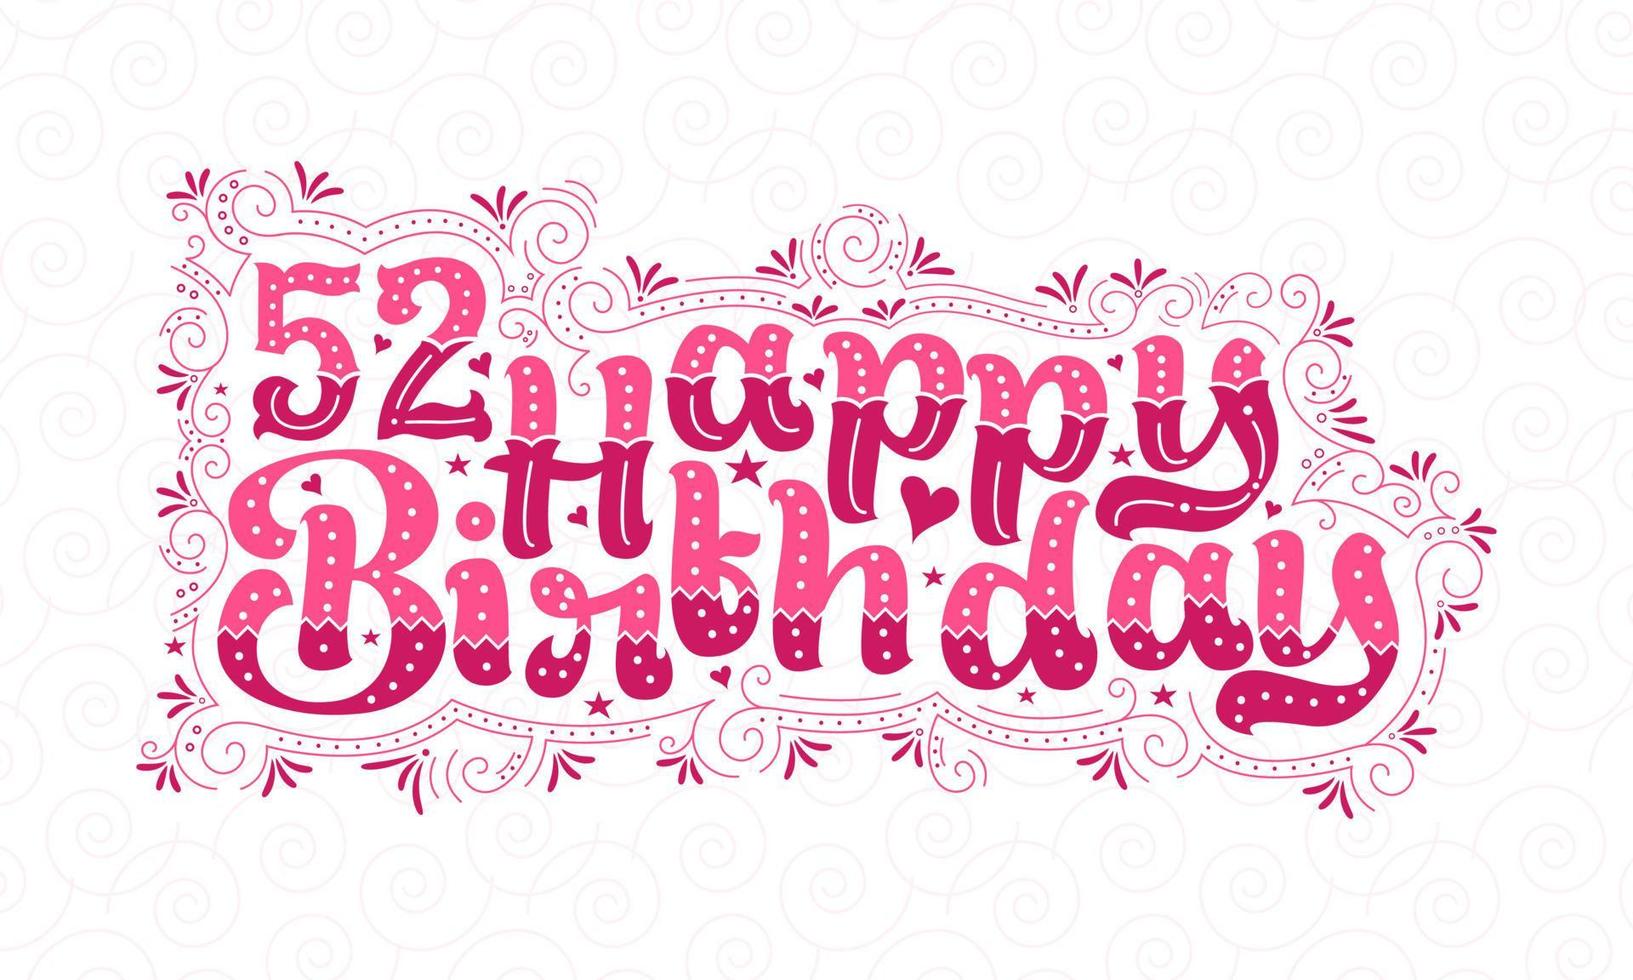 52:a Grattis på födelsedagen bokstäver, 52 års födelsedag vacker typografidesign med rosa prickar, linjer och löv. vektor